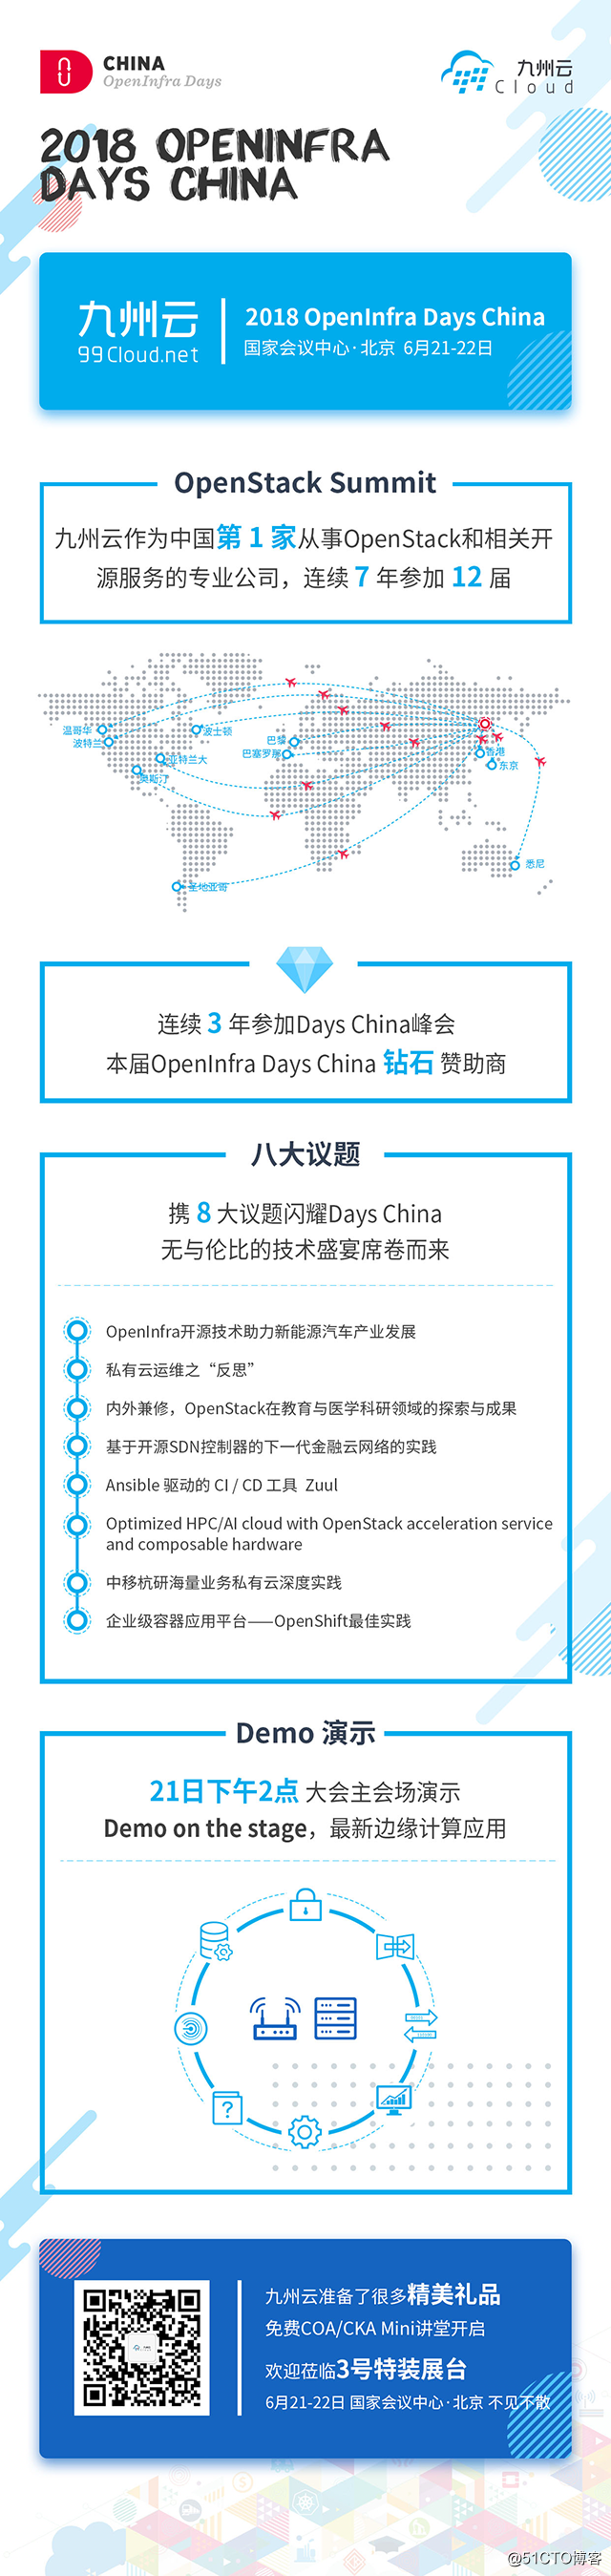 2018 OpenInfra Days China，九州云强势来袭!